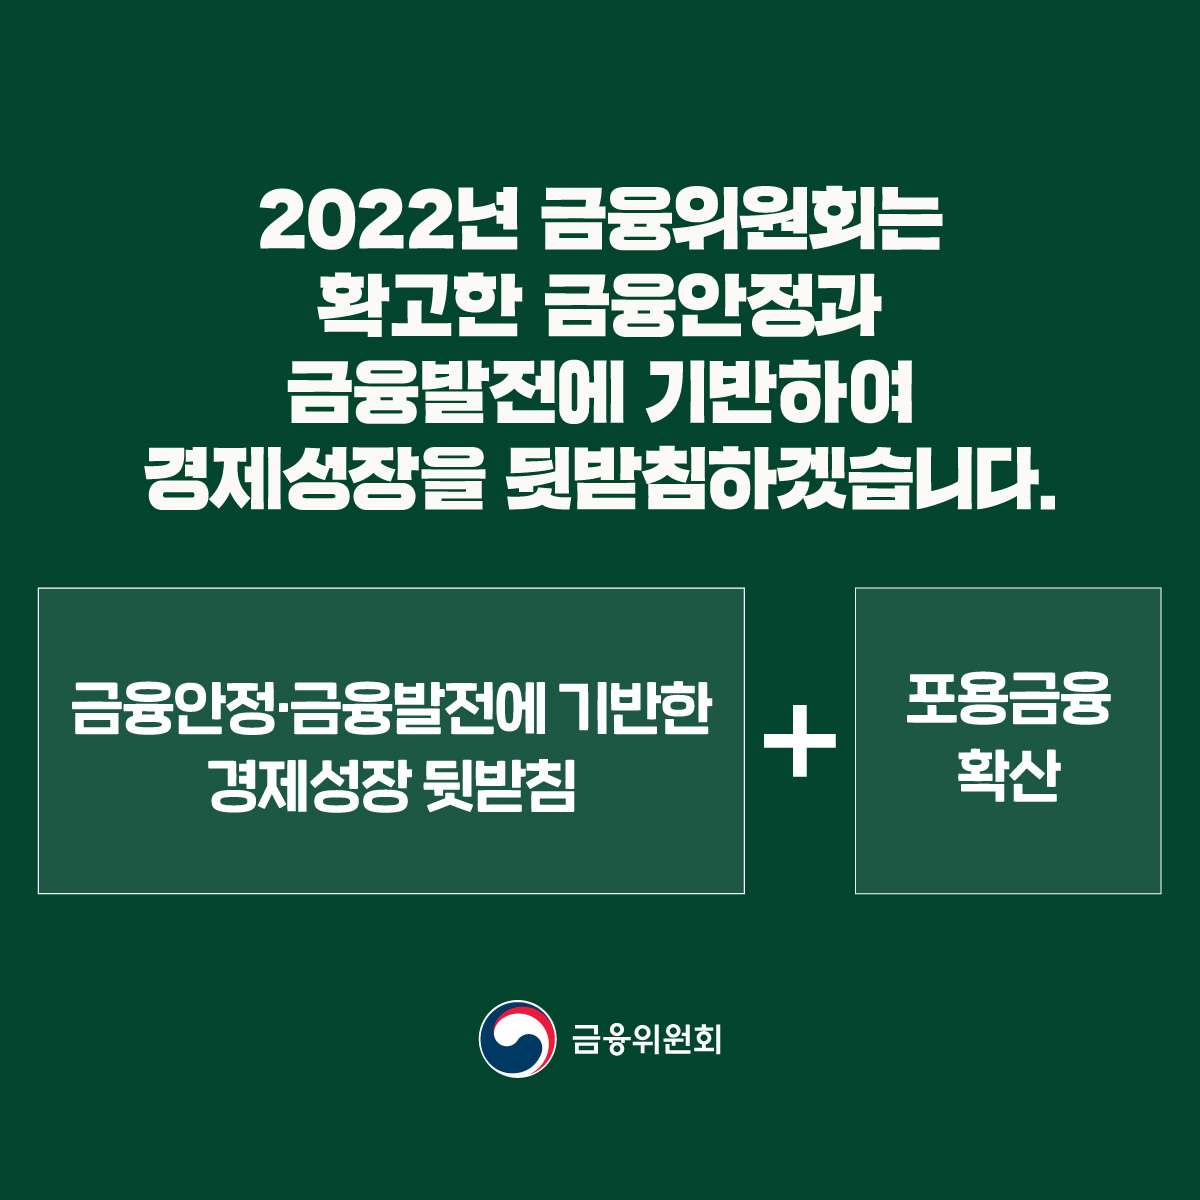 [2022년 금융위원회 업무계획 ③]  실물지원 강화로 경제성장을 이끌겠습니다